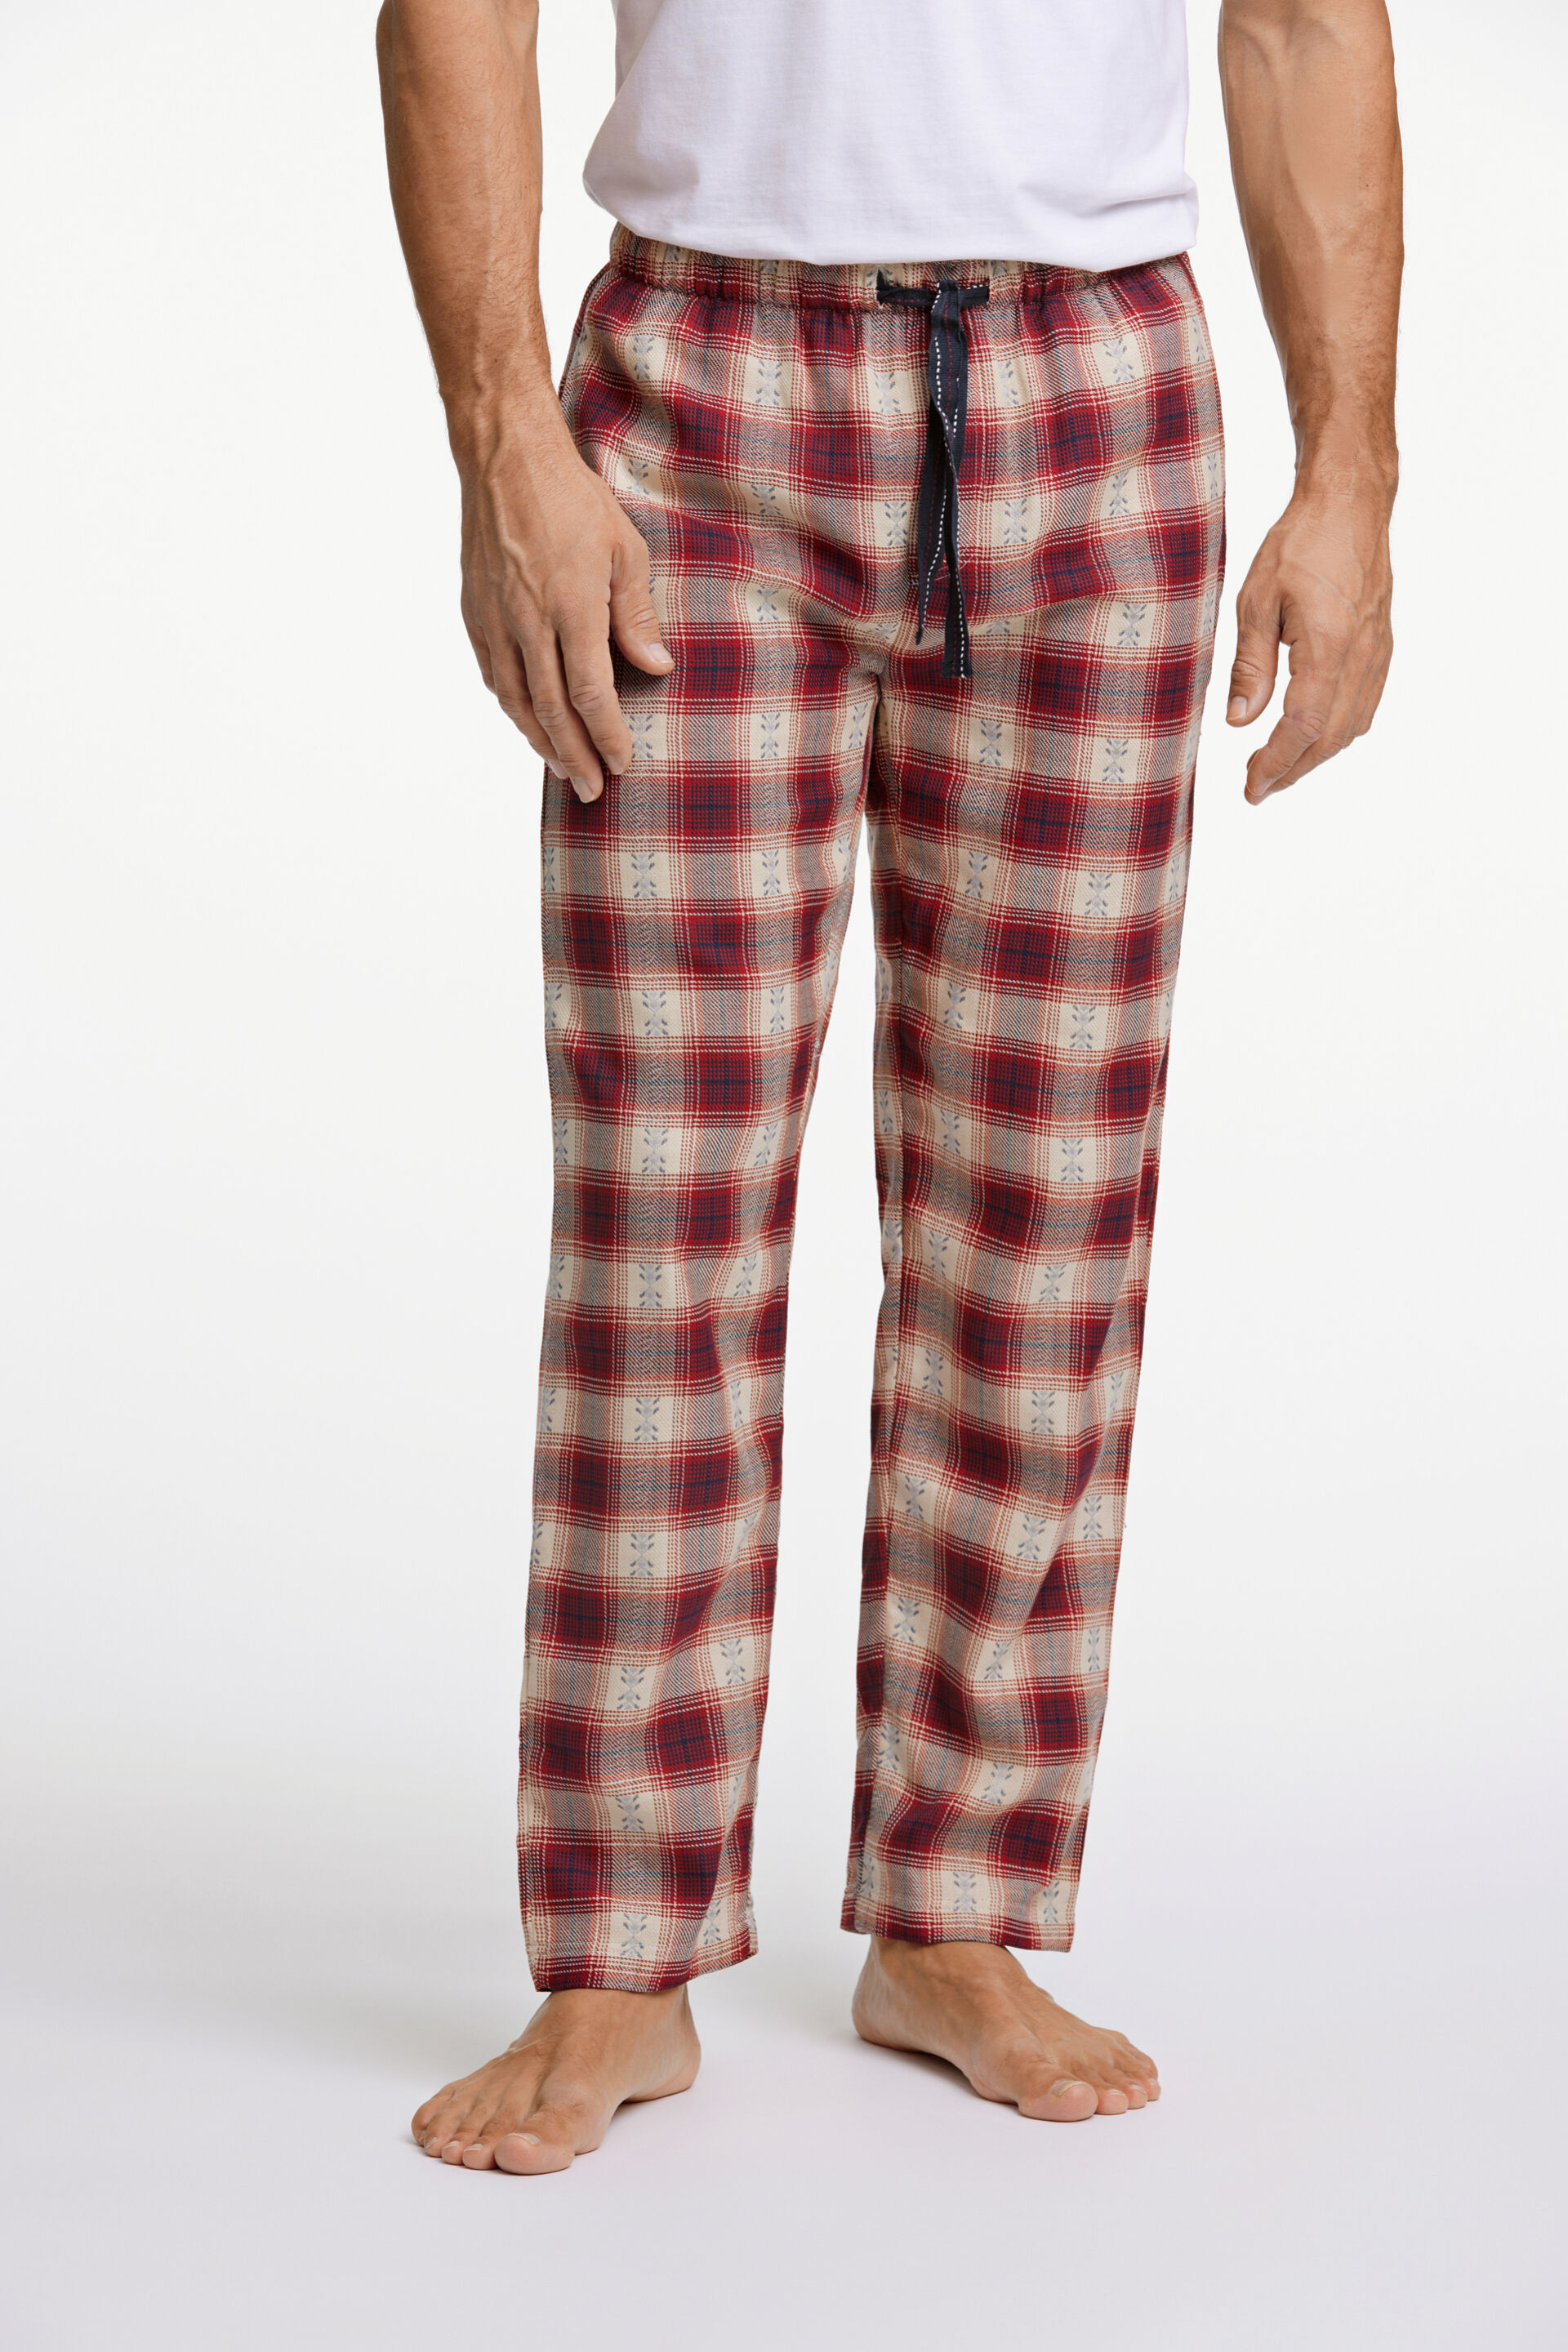 Lindbergh  Pyjamas 30-997512